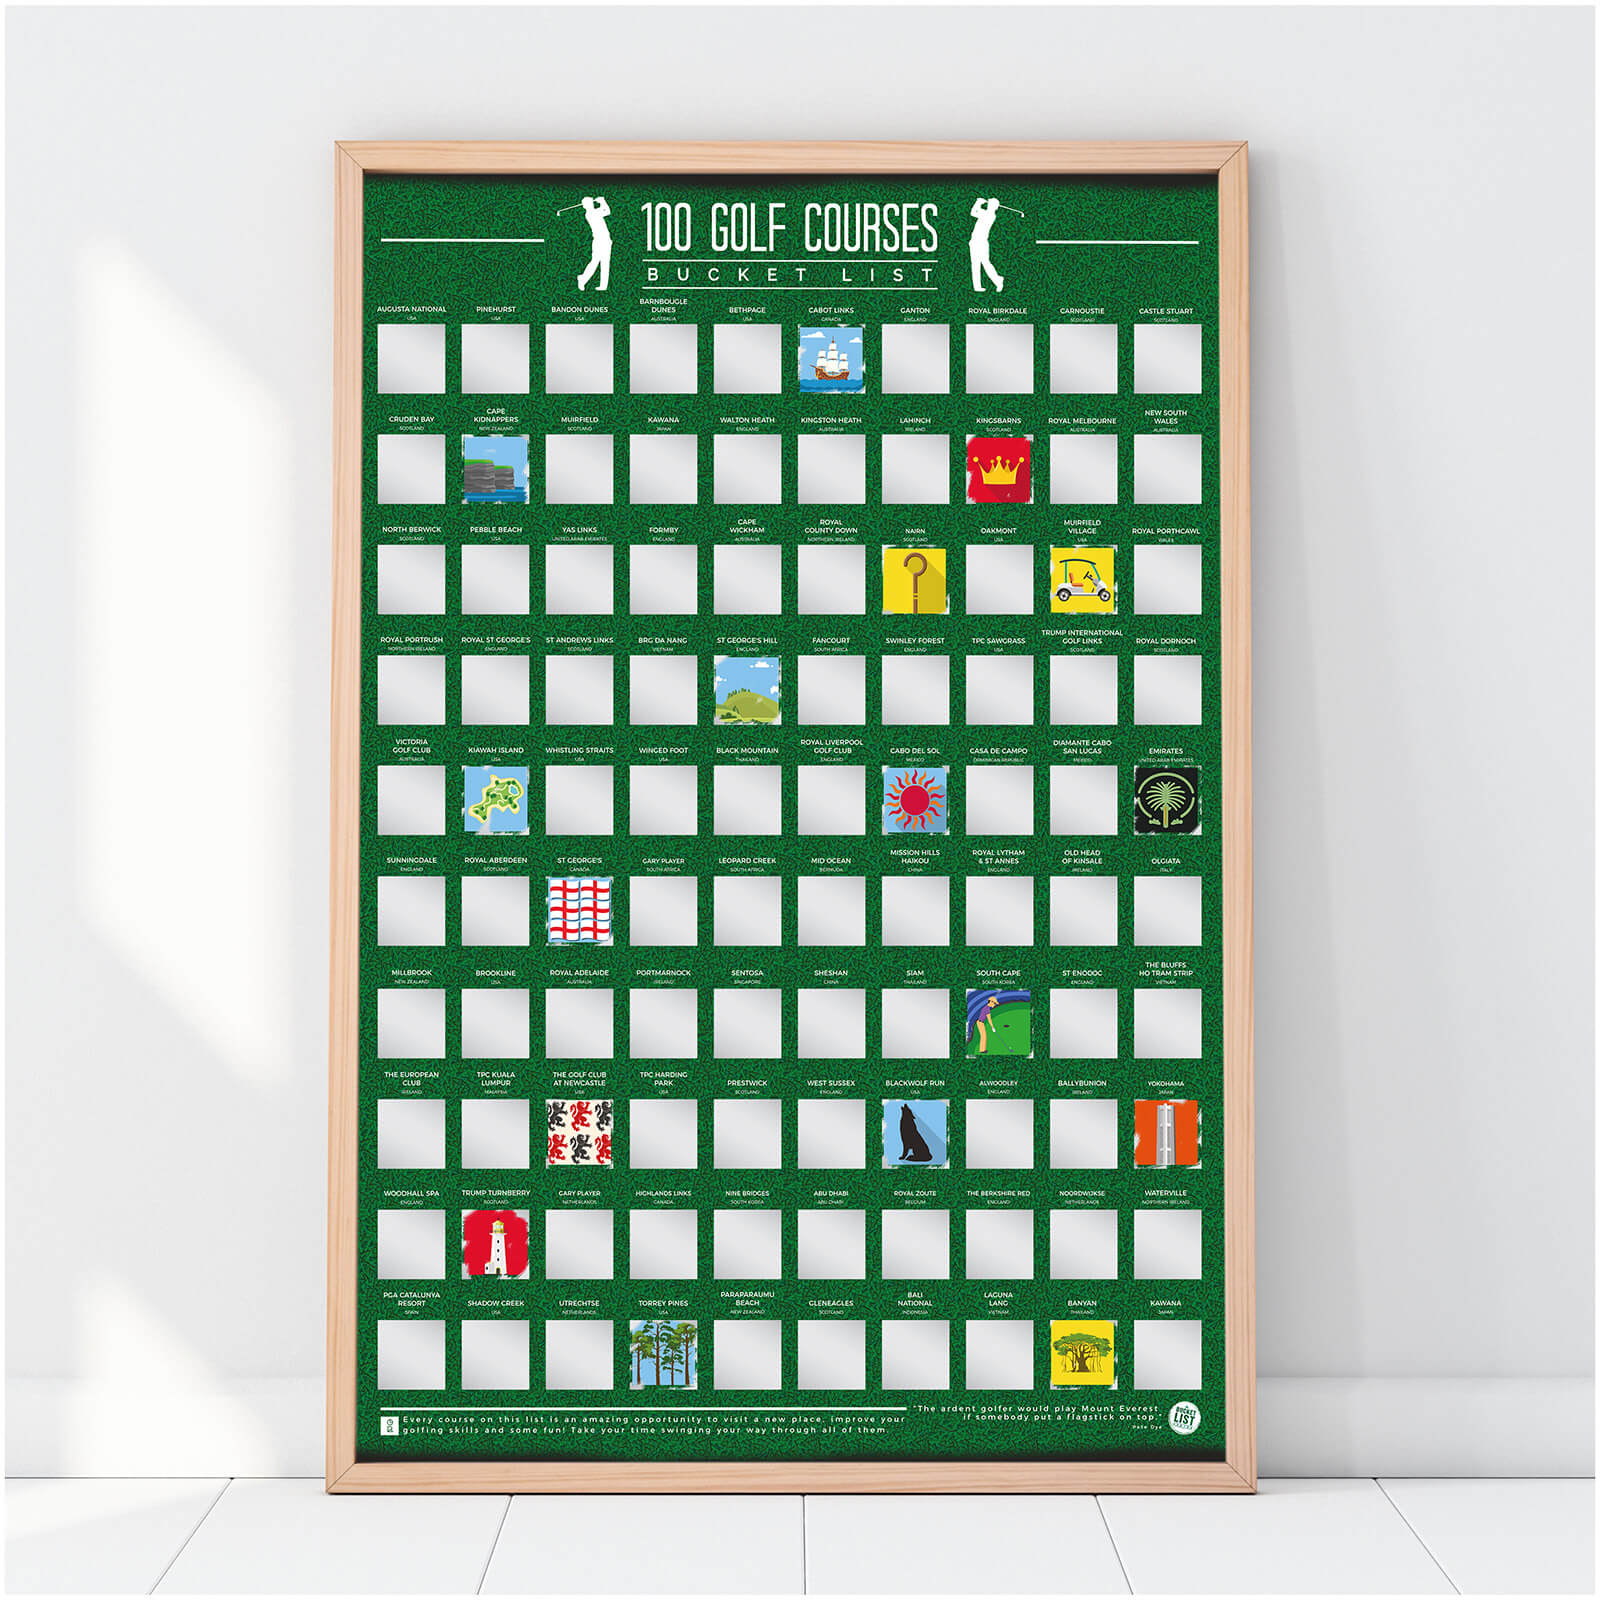 100 Golf Courses Bucket List Scratch Poster